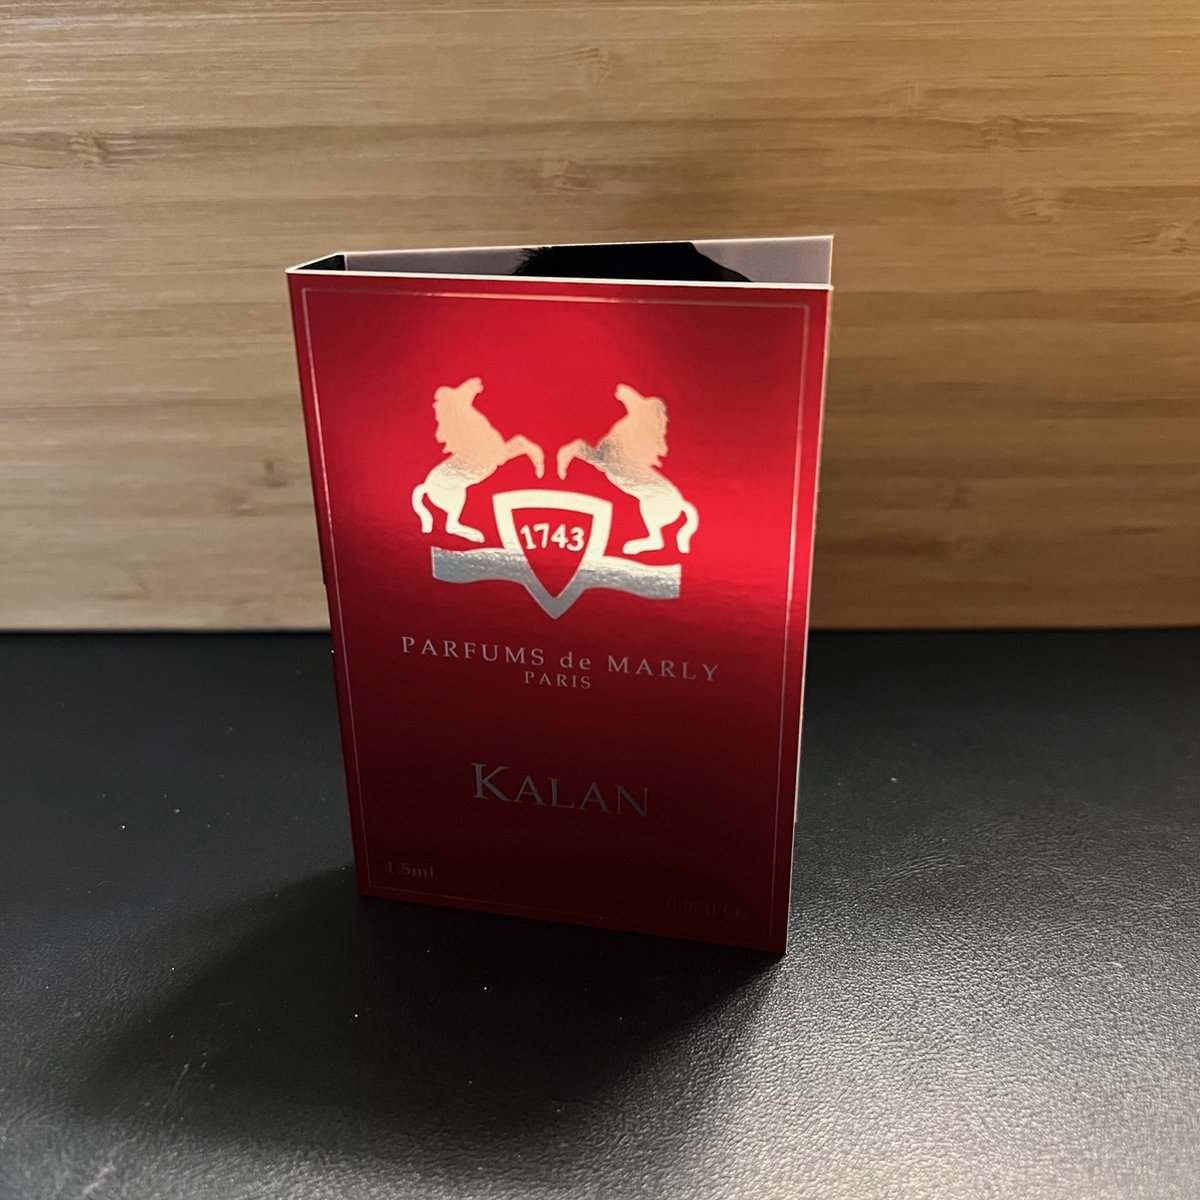 Parfums De Marly - Kalan 1.5ml